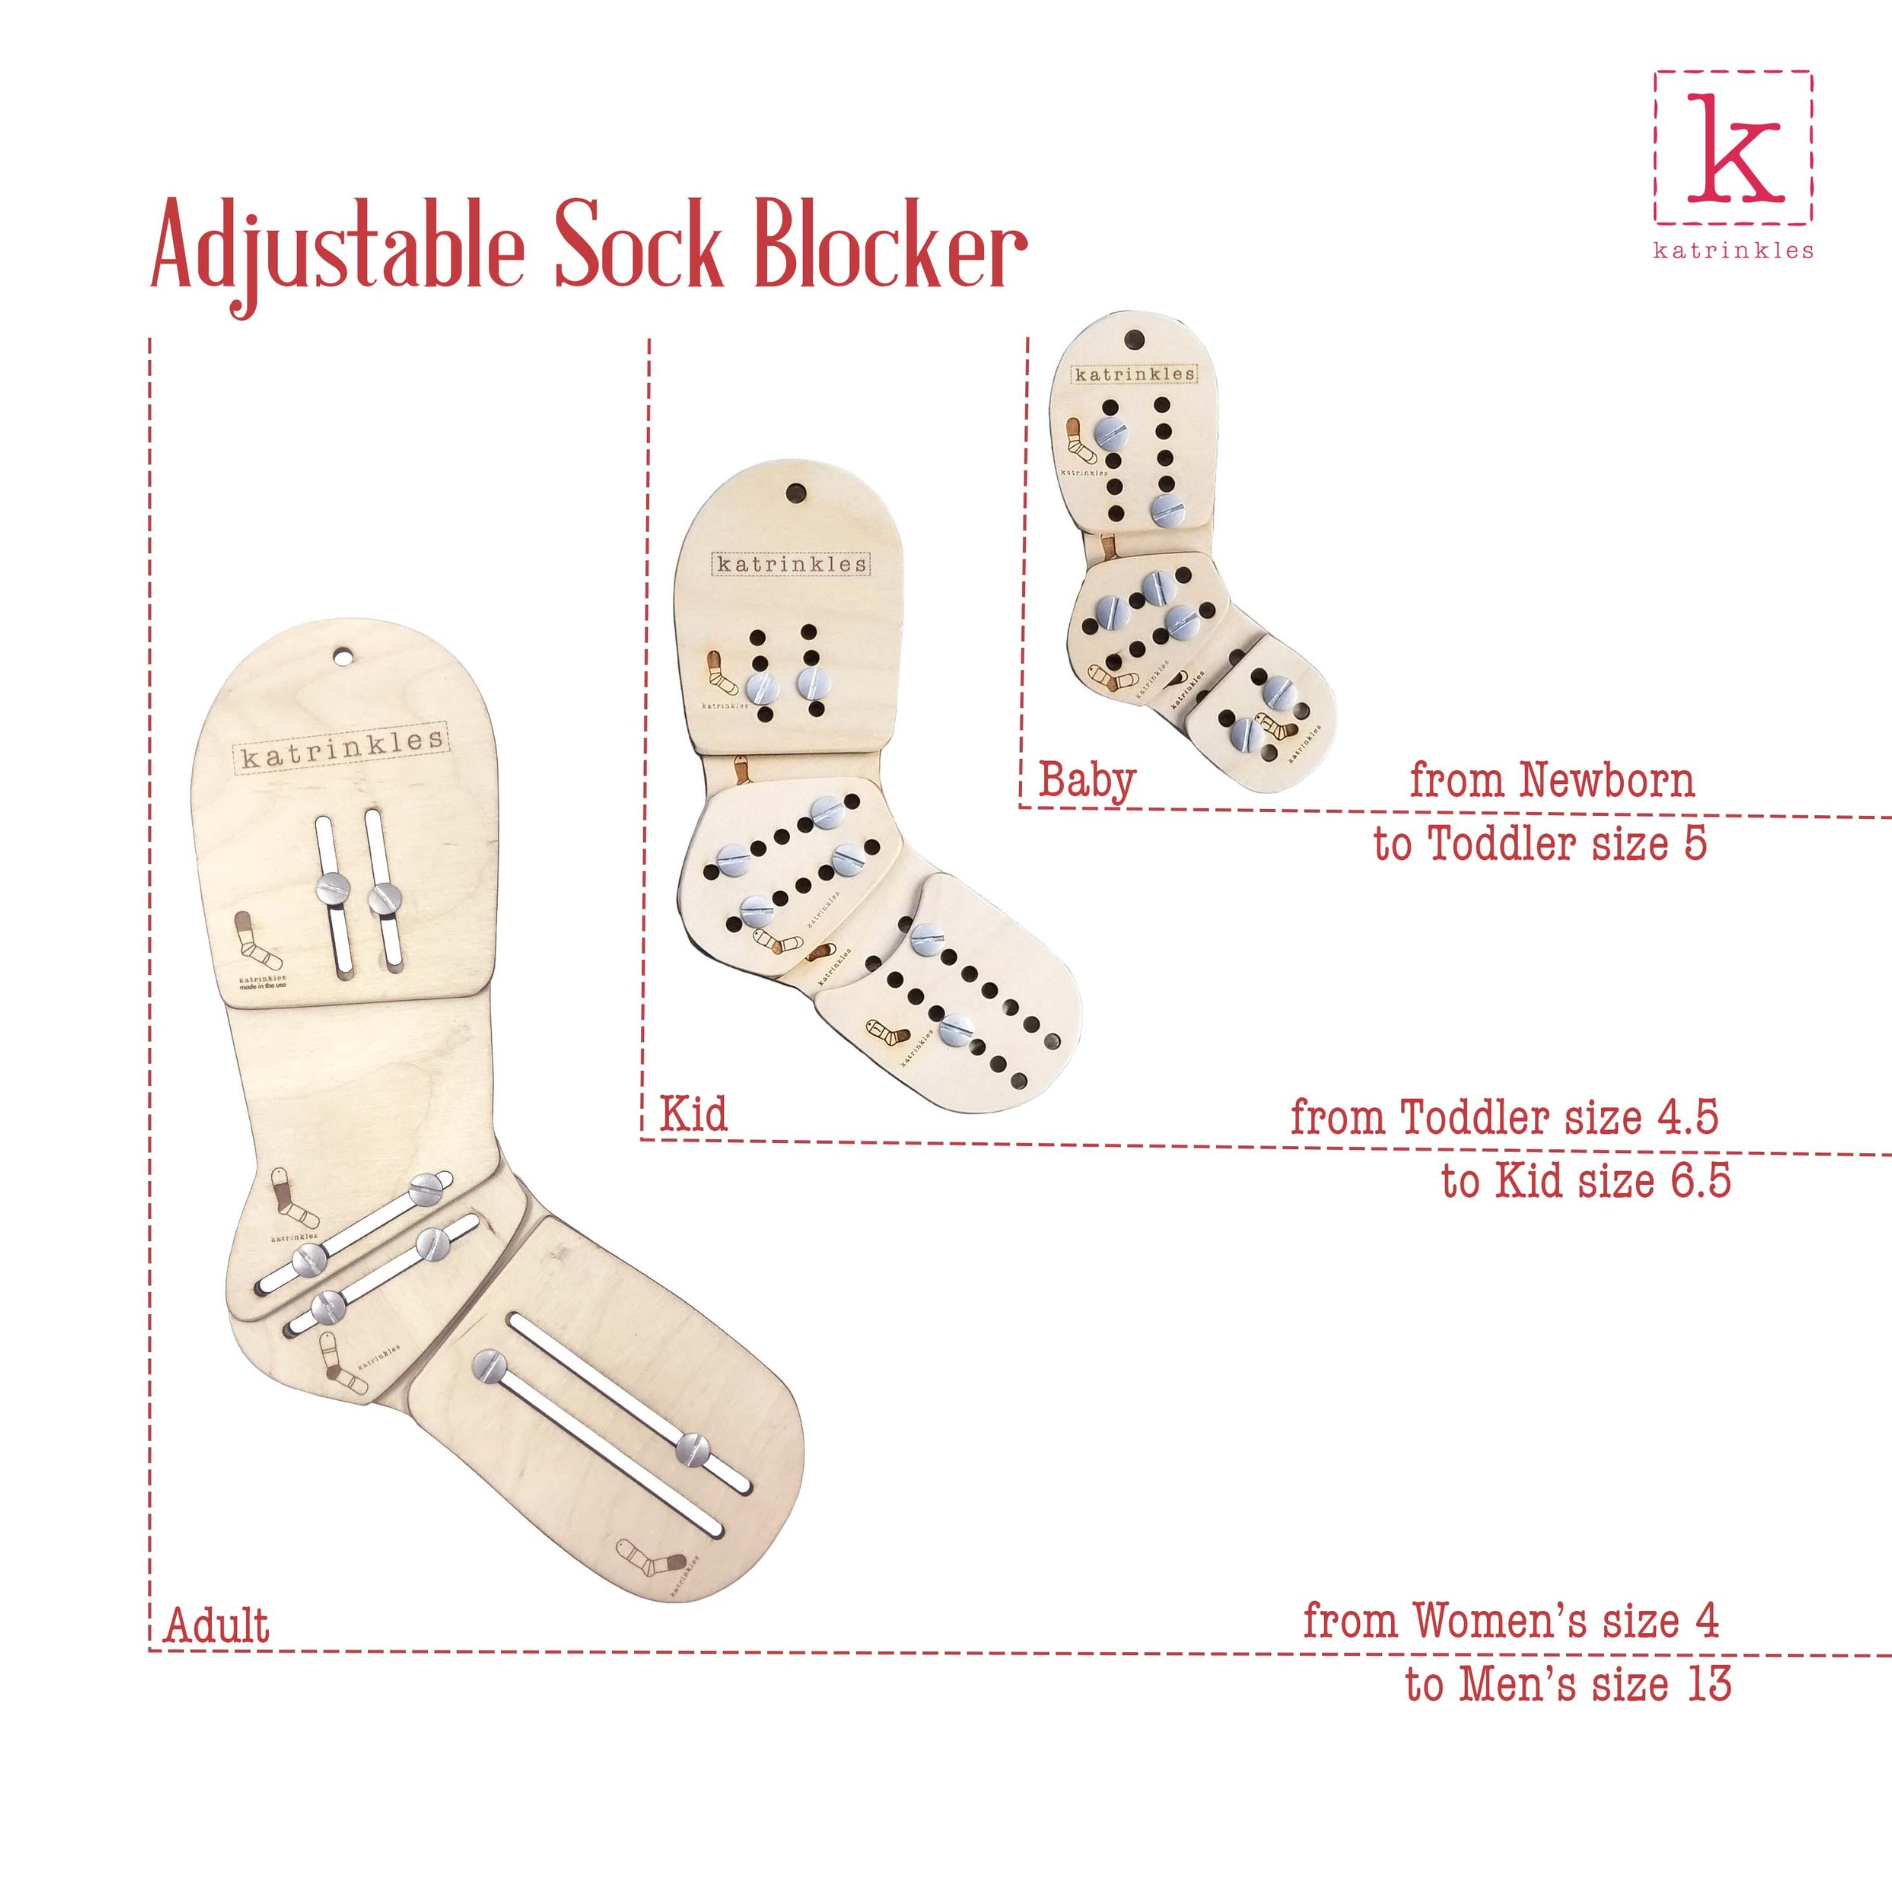 Sock Stop (90ml) - Antiskli - Knit Like A Bee